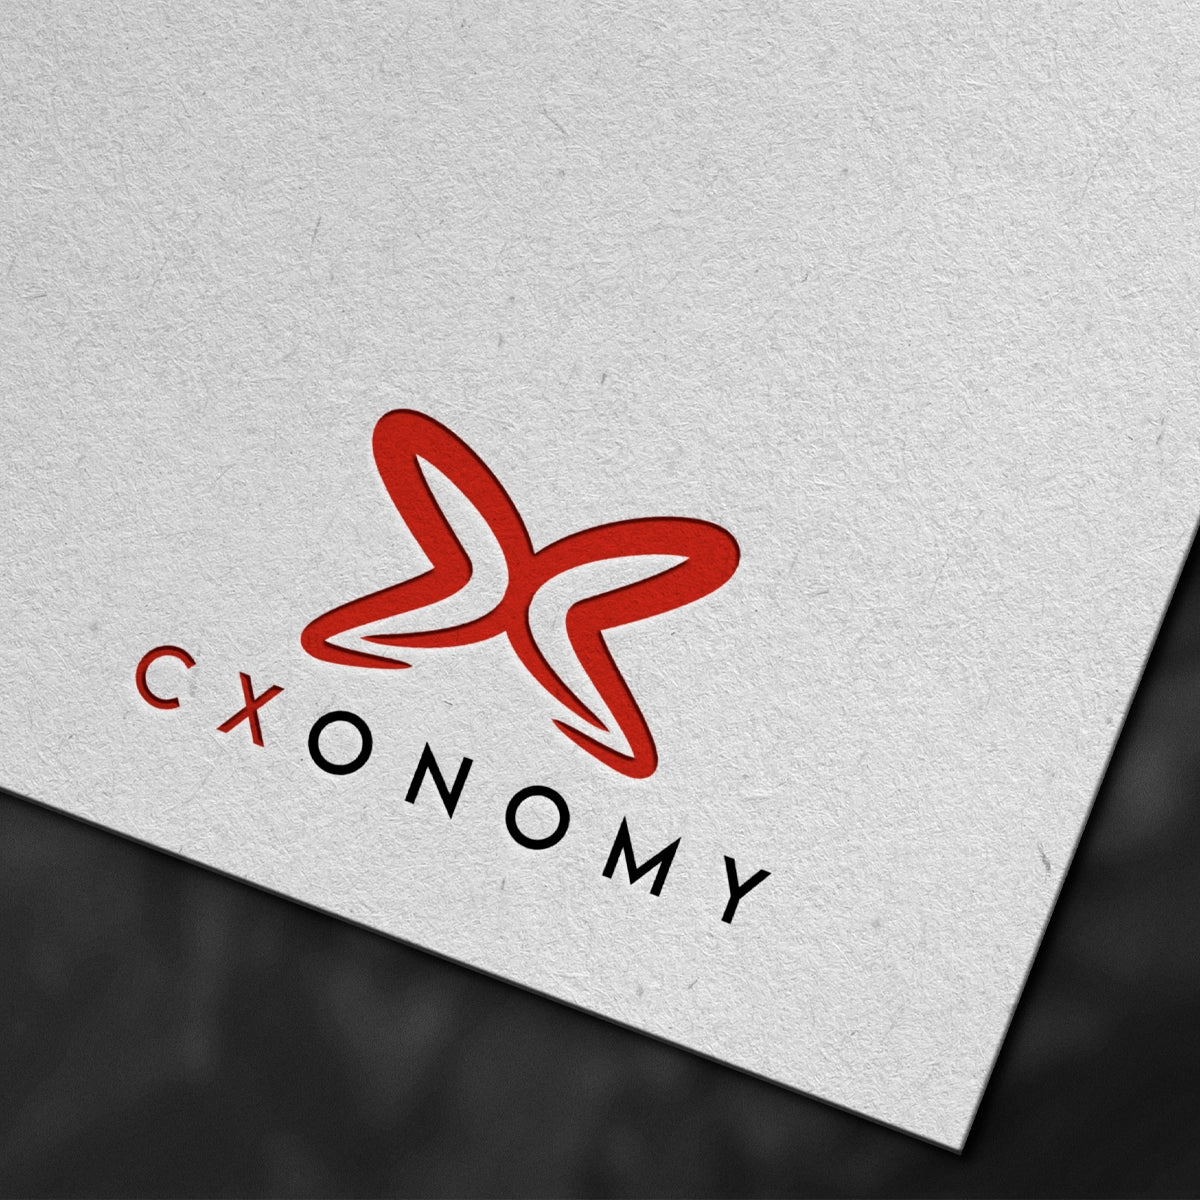 cxonomy.com